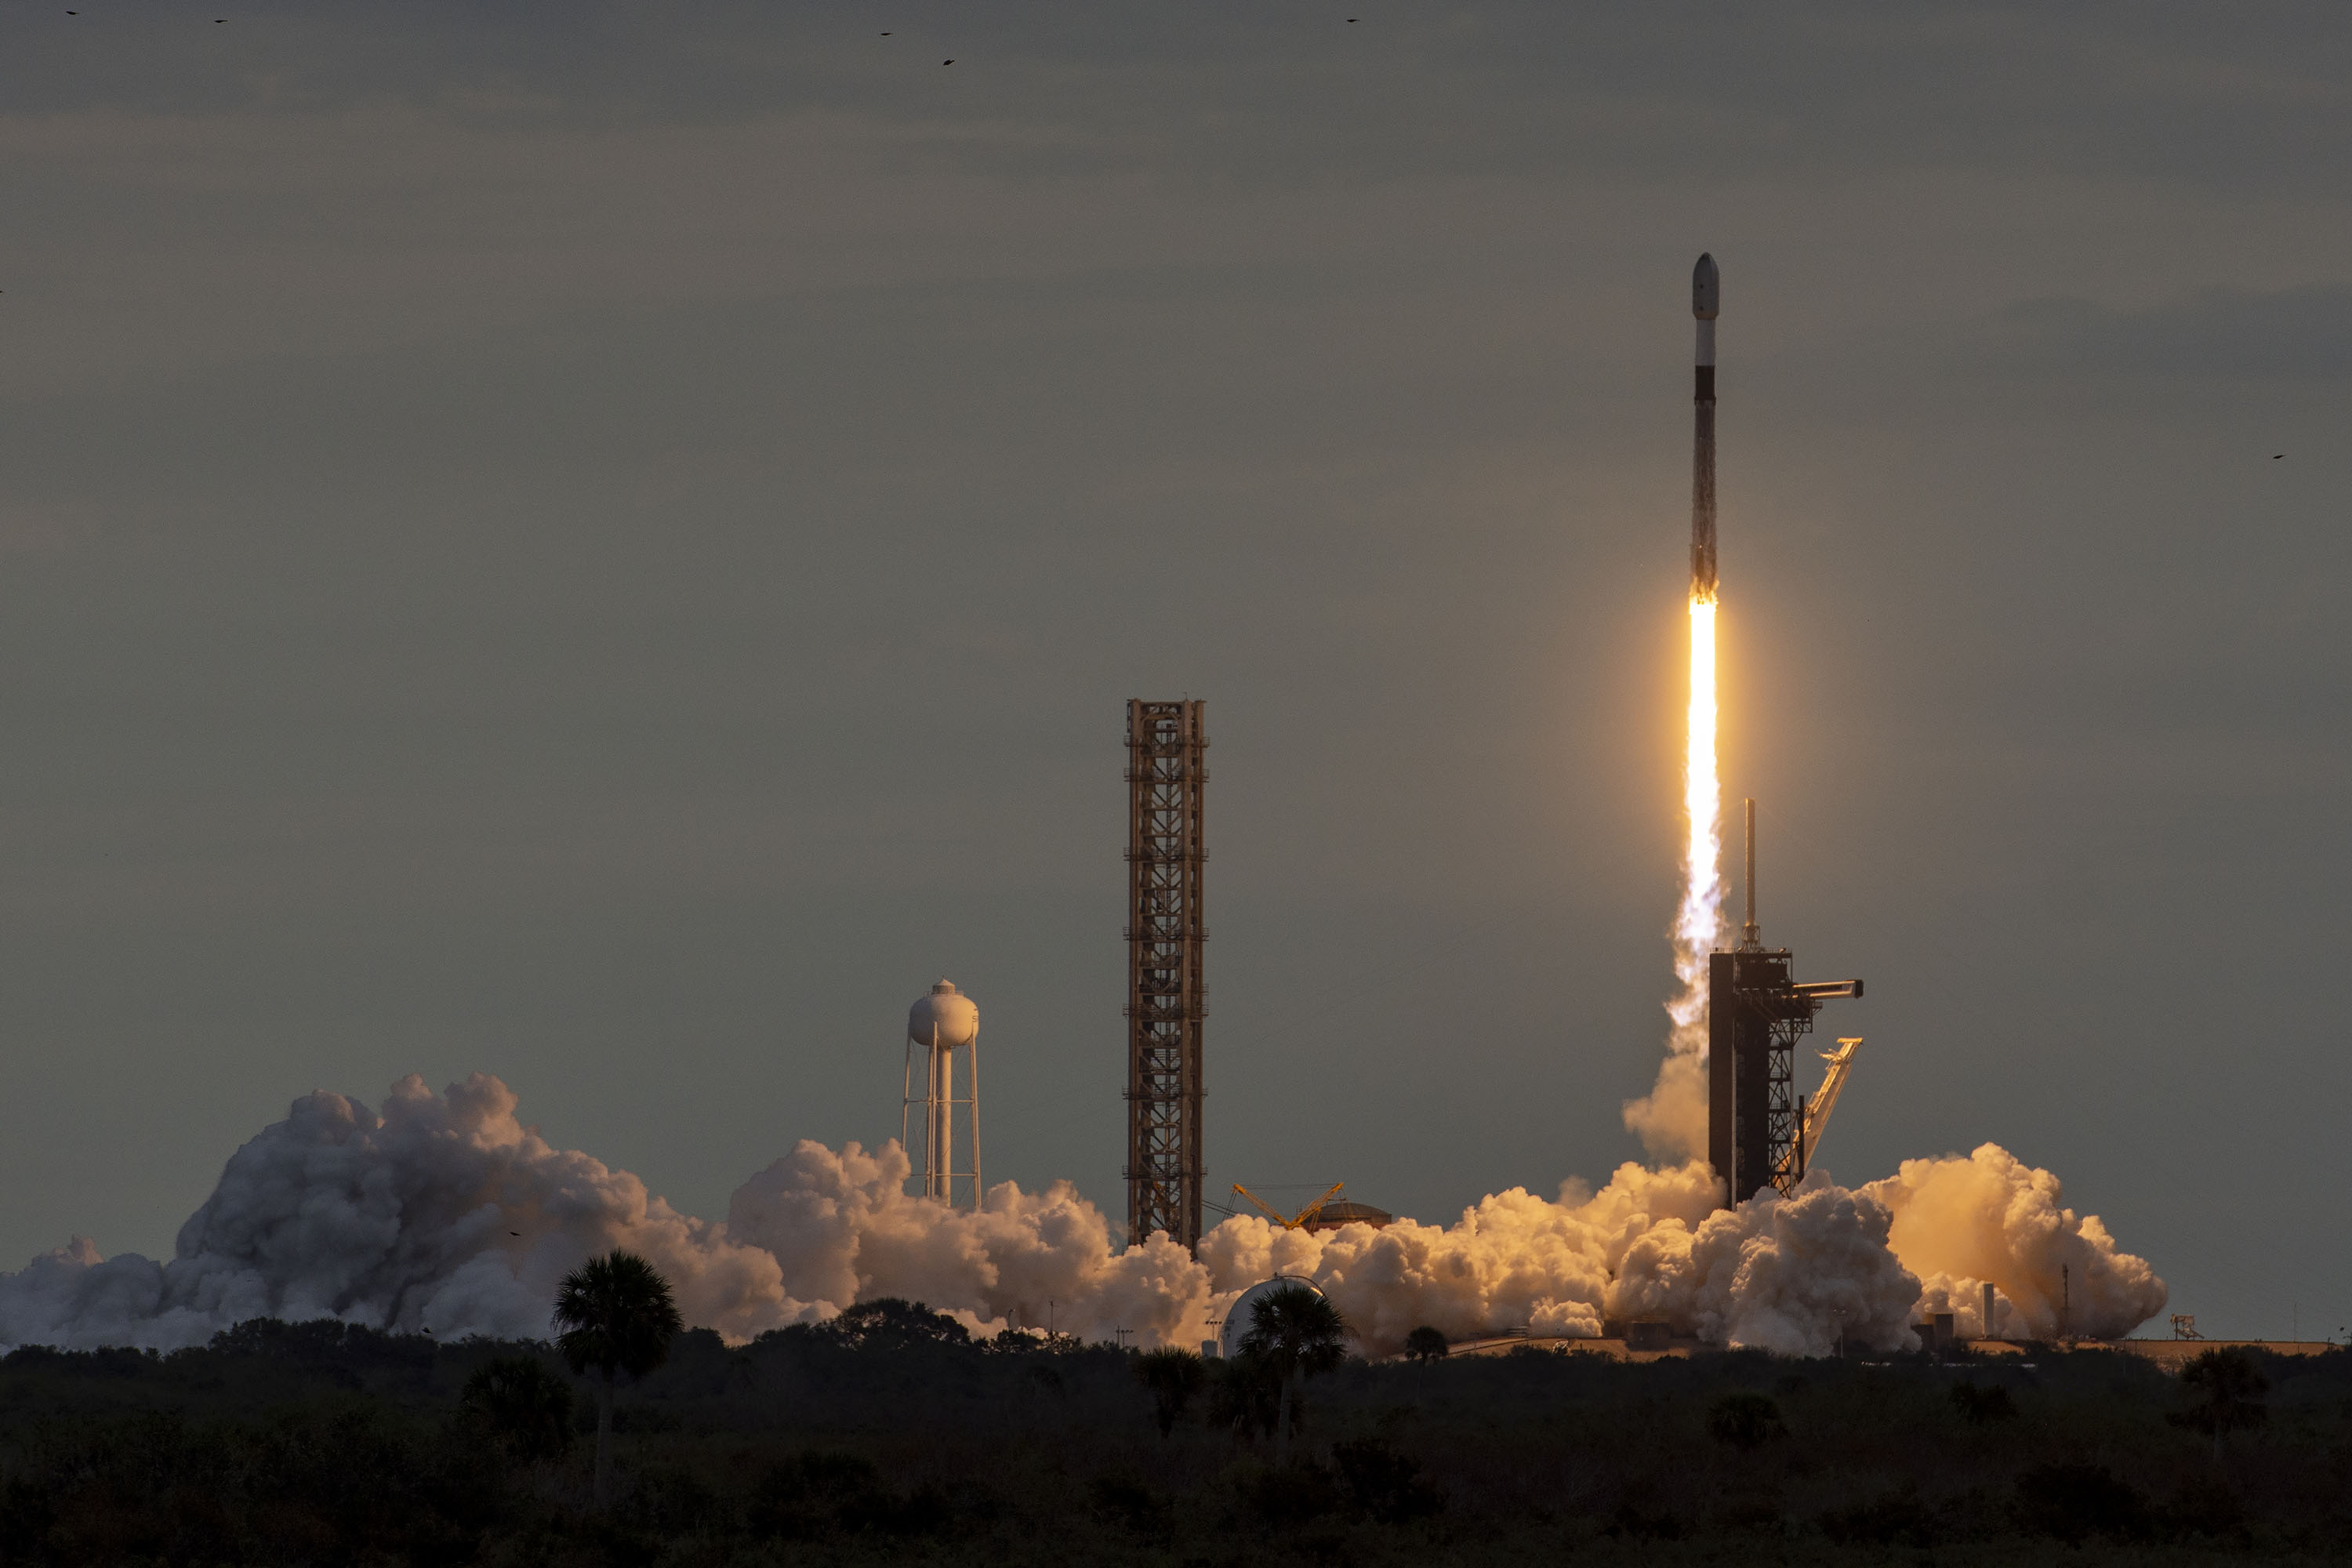 Falcon 9 envió al espacio el nanosatélite ucraniano PolyITAN-HP-30 y estableció un nuevo récord de lanzamiento simultáneo de naves espaciales en órbita